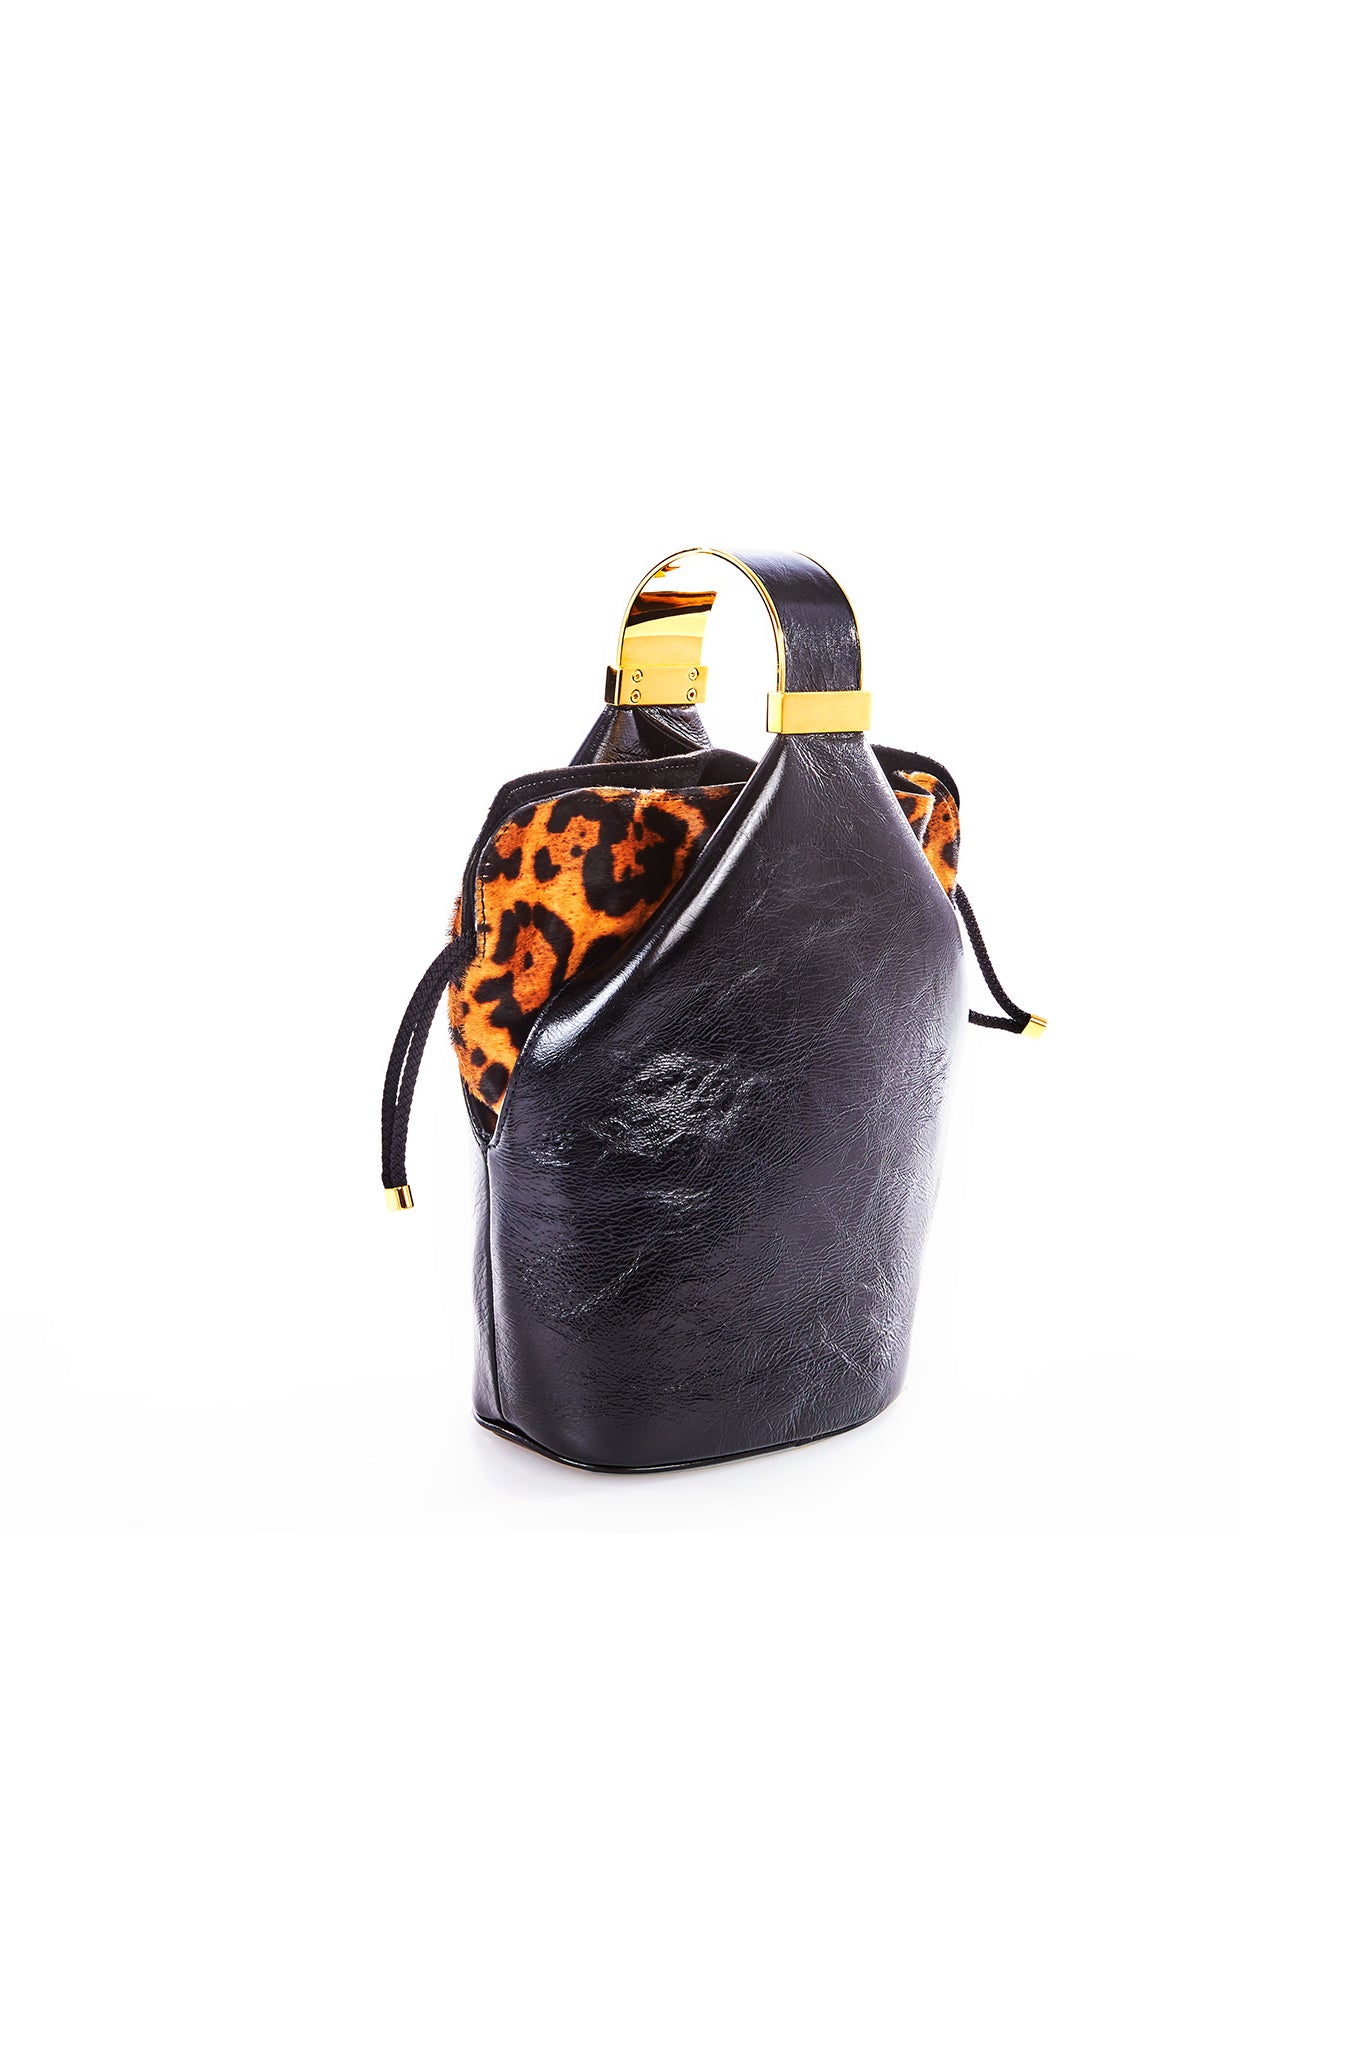 Kit Bracelet Bag in Black Leather and Leopard